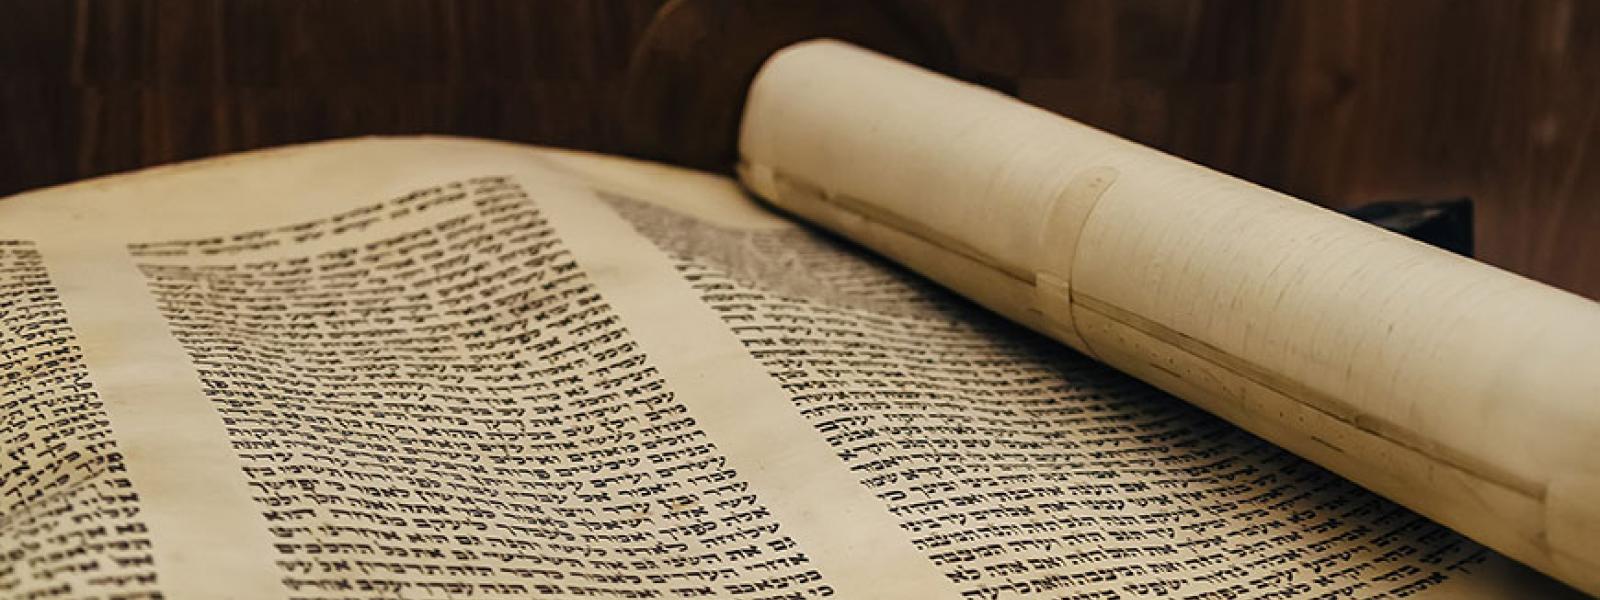 What Aramaic did Jesus speak?